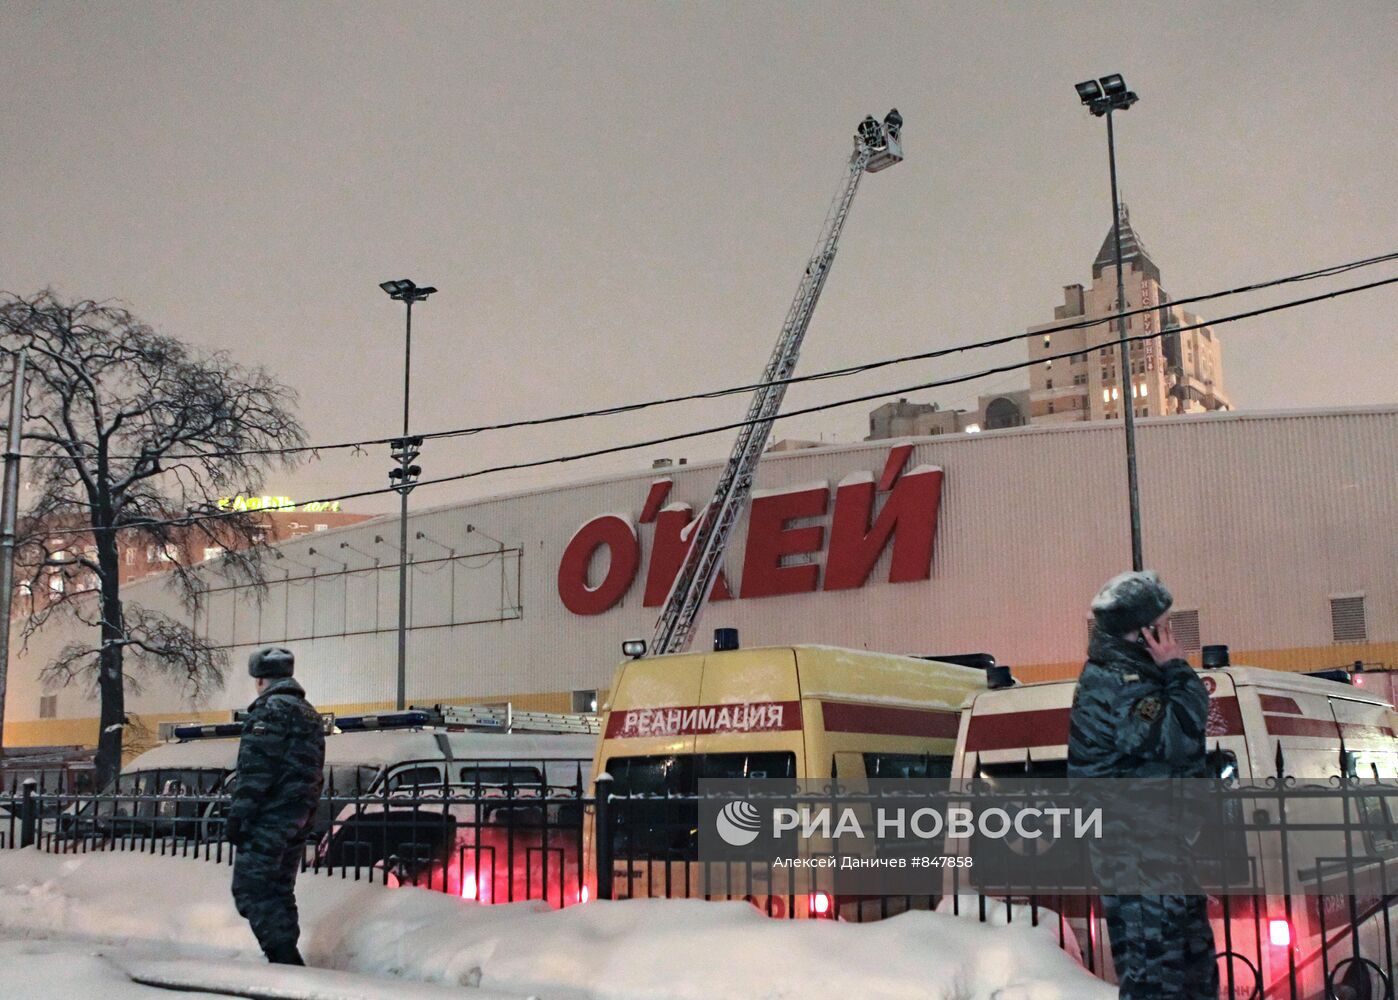 Обрушение кровли в сетевом магазине "О'кей" в Санкт-Петербурге